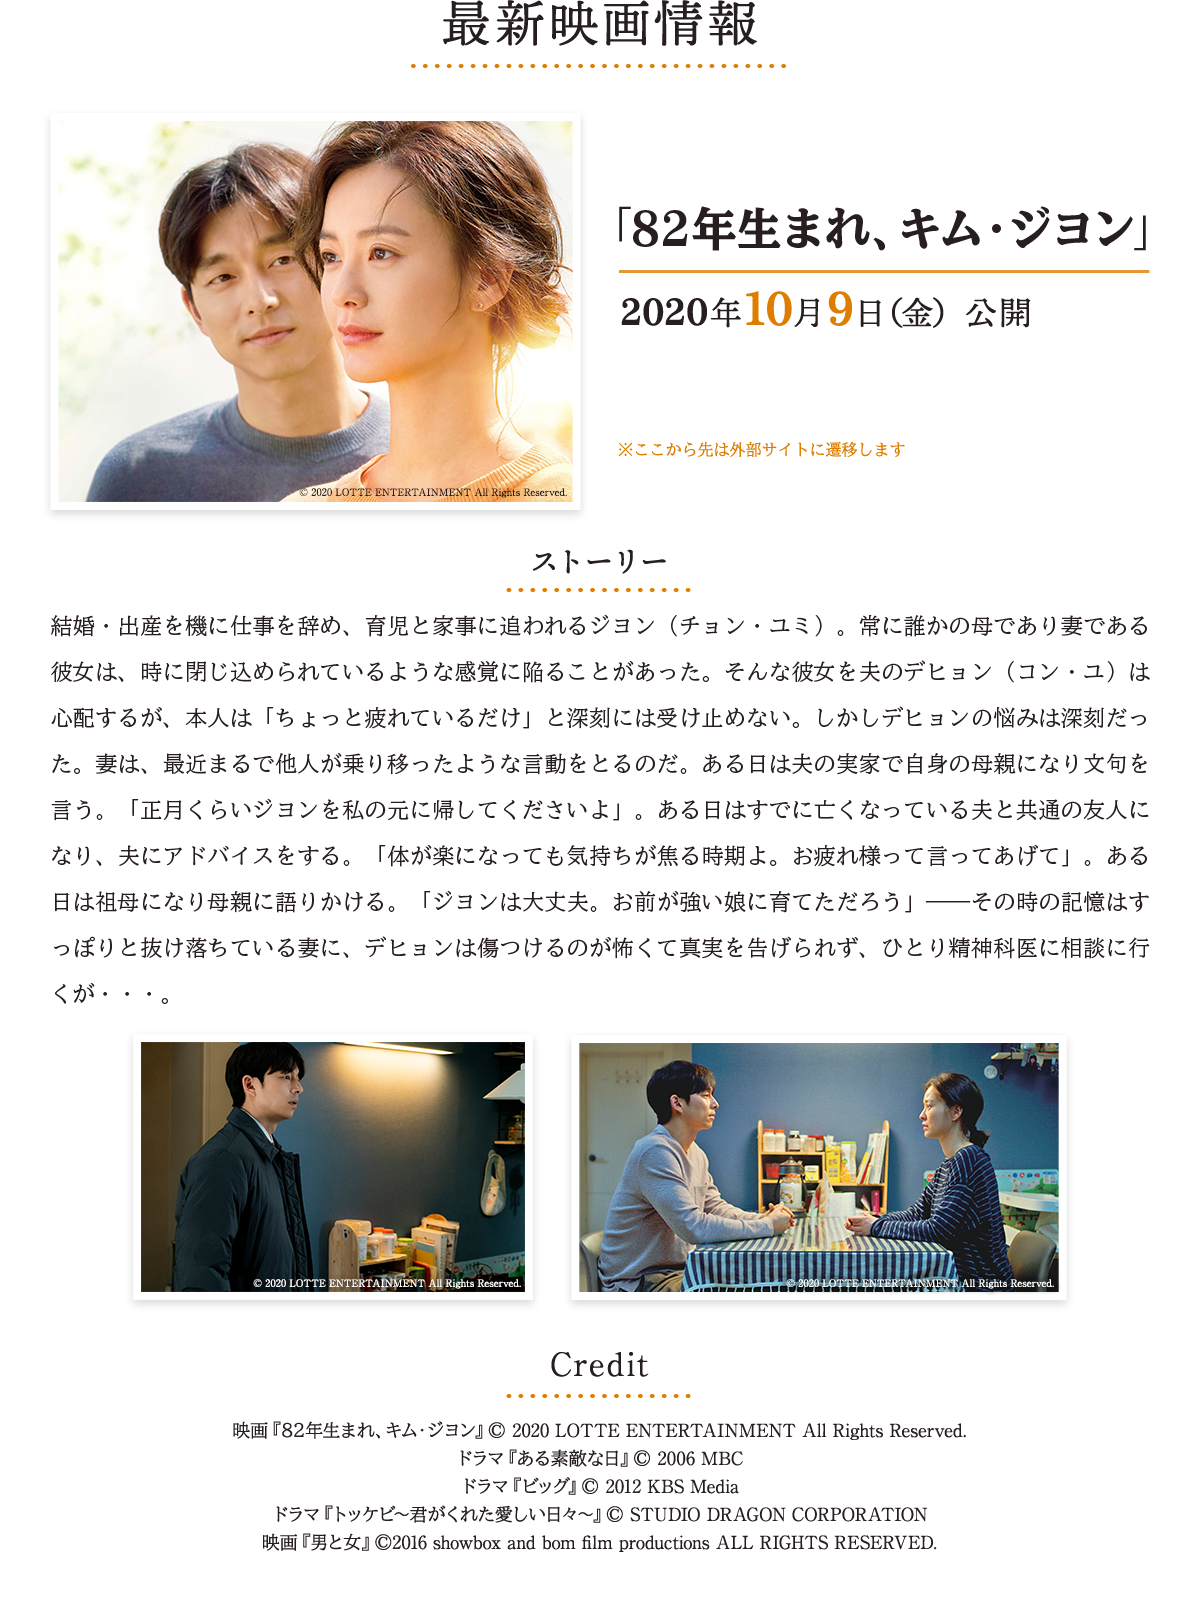 最新映画情報　「82年生まれ、キム・ジヨン」2020年10月9日(金) 公開